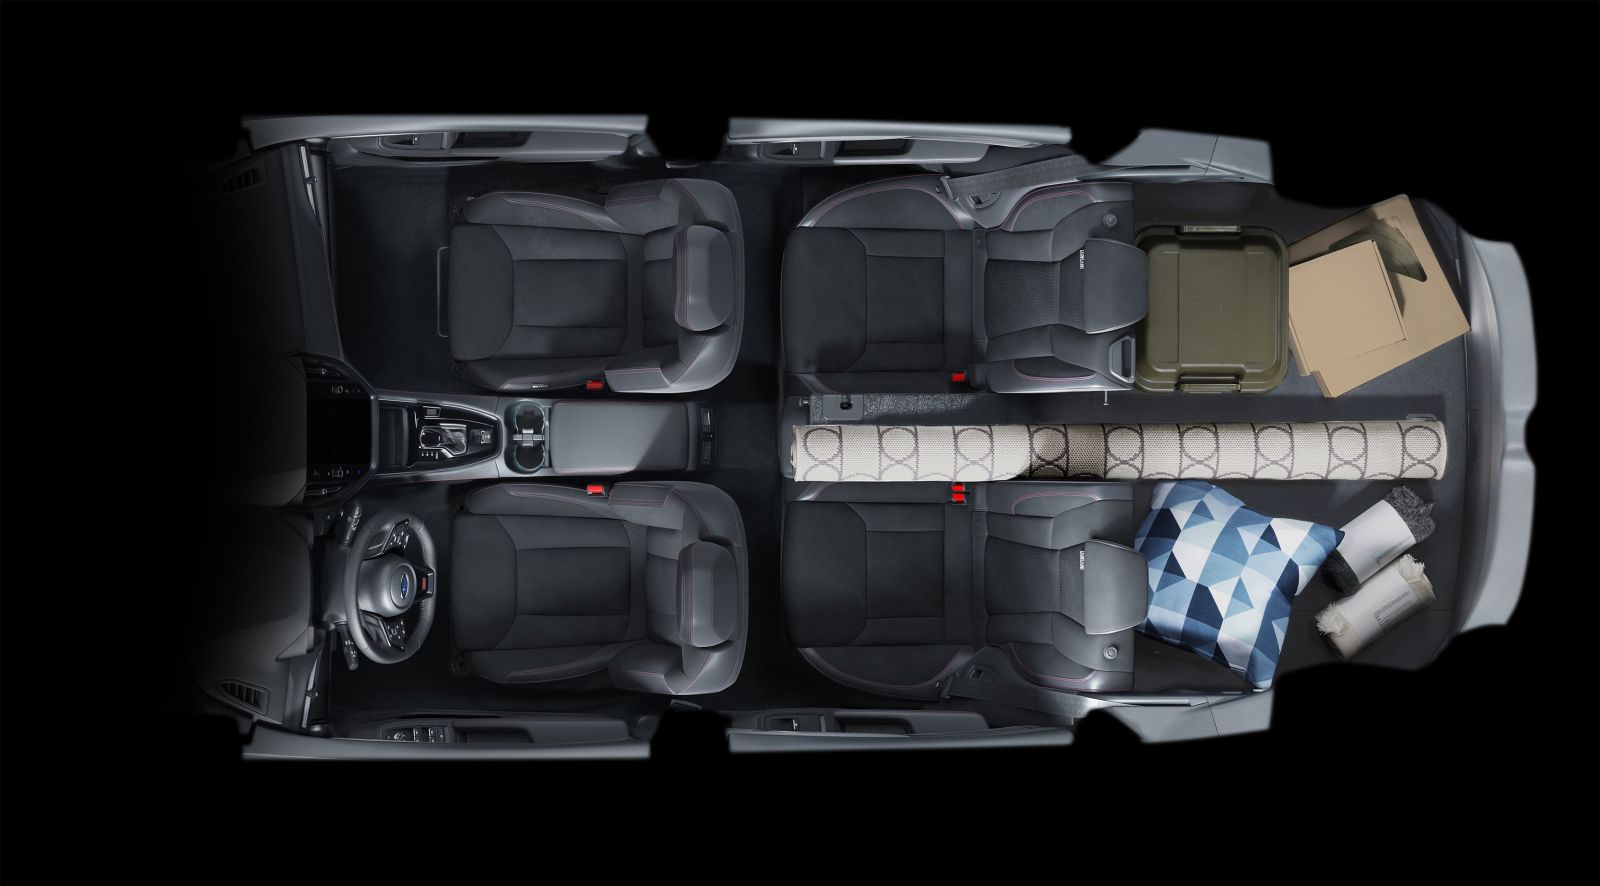 Subaru WRX Wagon thực dụng hơn, cho phép bạn chuyên chở nhiều hàng hóa hơn hoặc lớn hơn